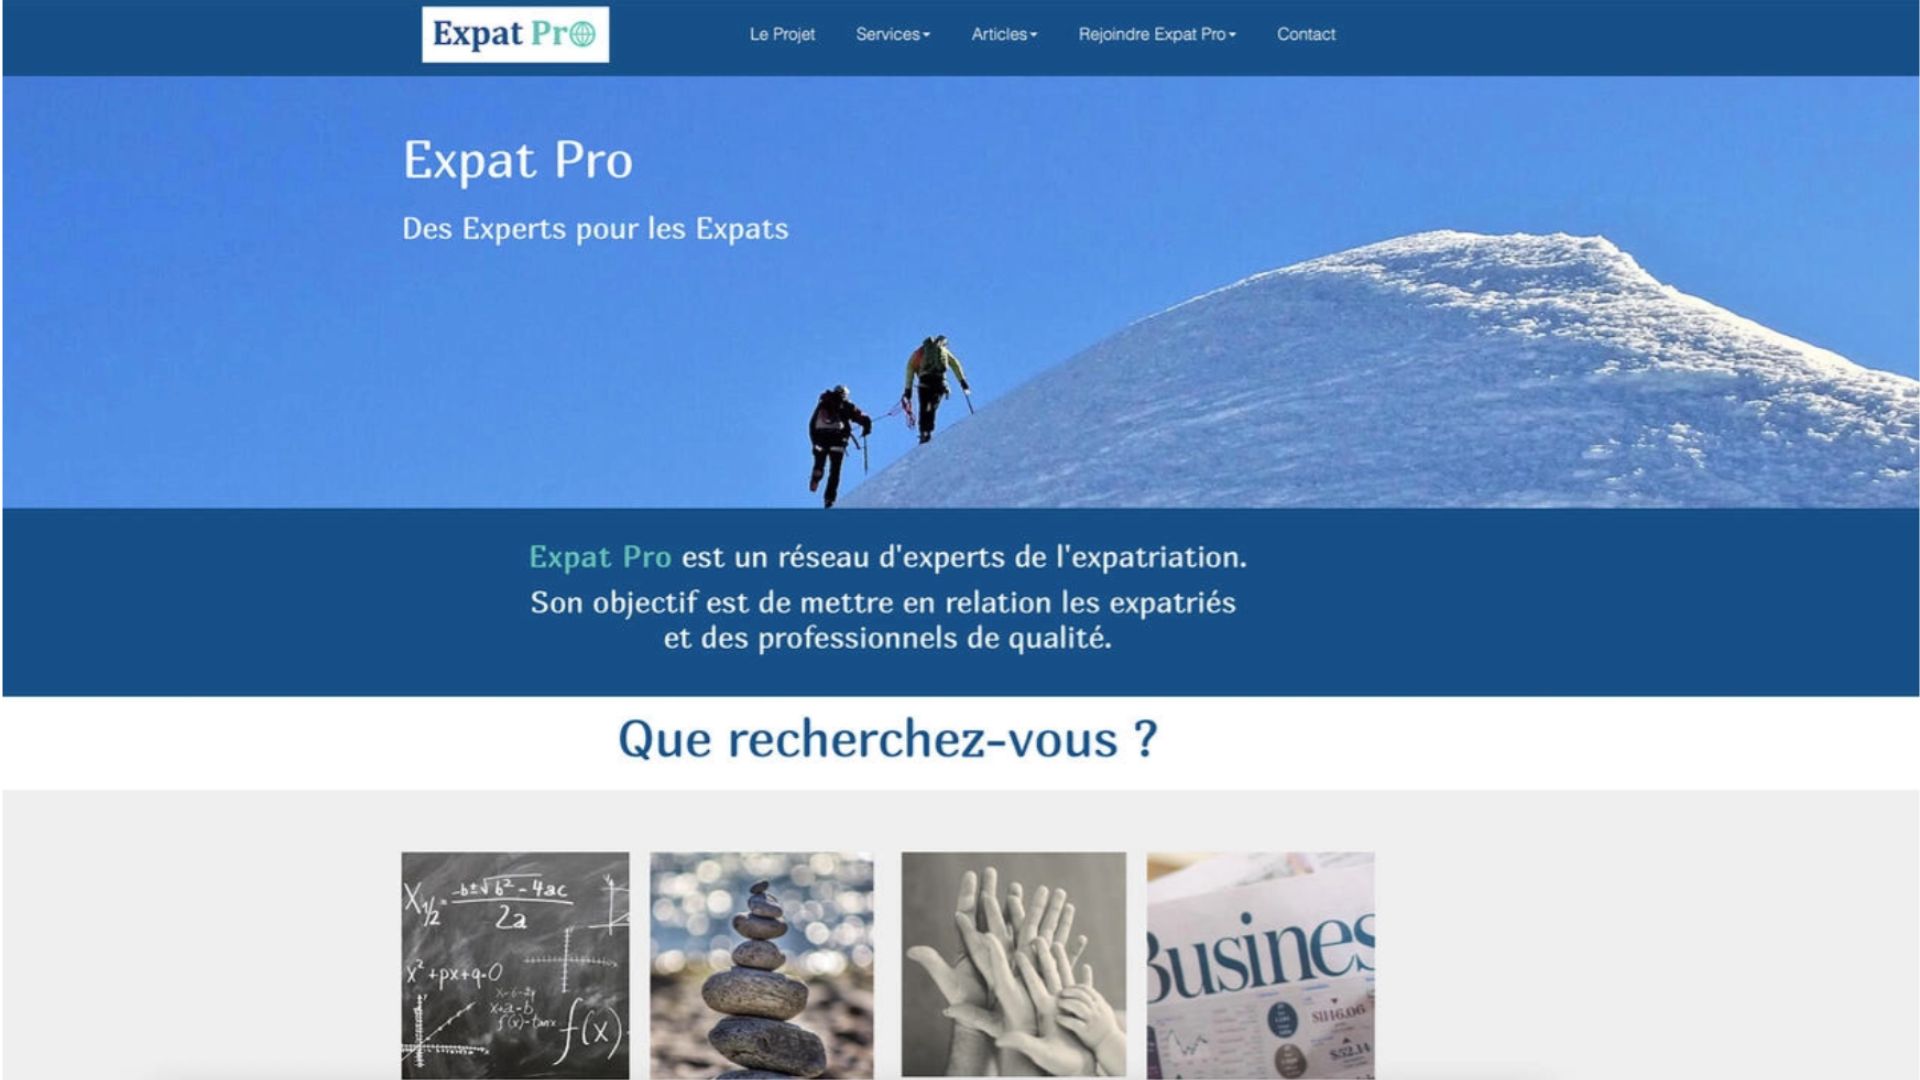 Vivre ailleurs, sur RFI : “Expat Pro pour les professionnels de l'expatriation“